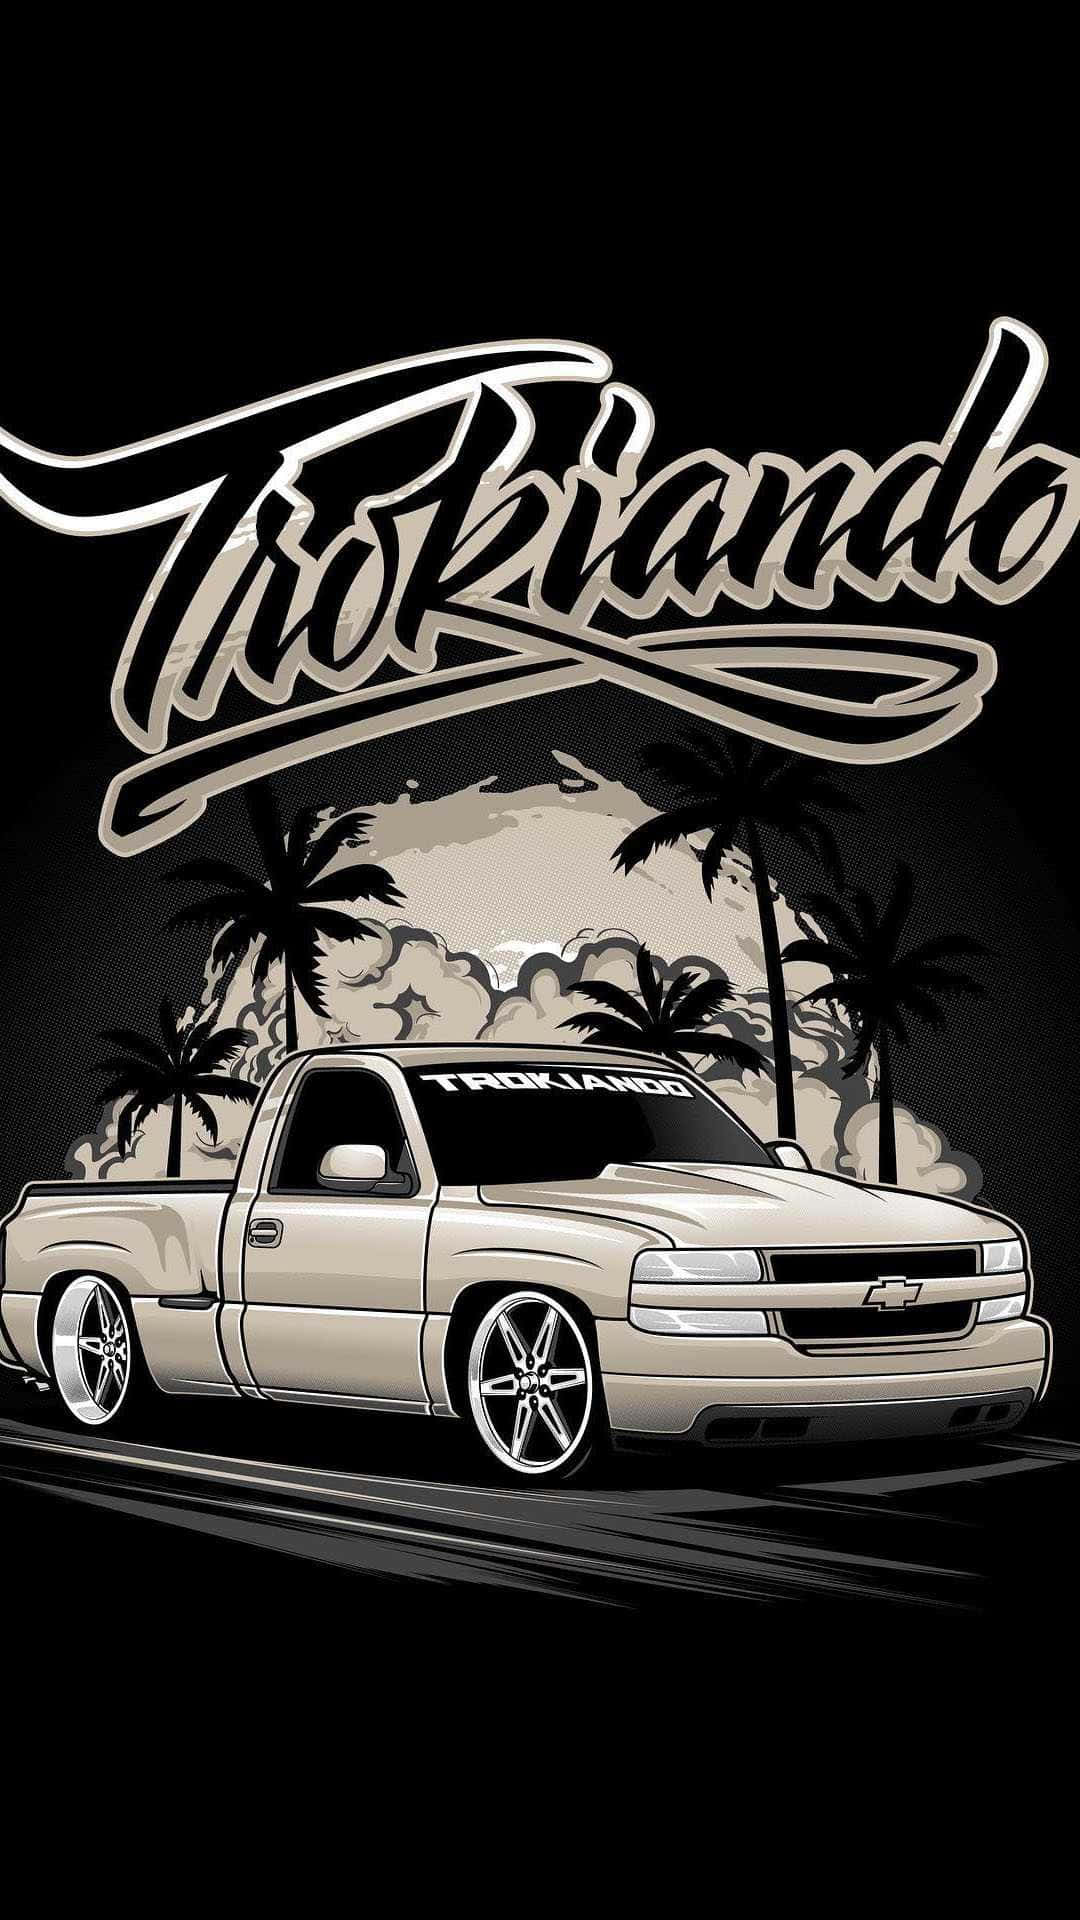 Pickup Truck Chevrolet Silverado Digital Art Wallpaper